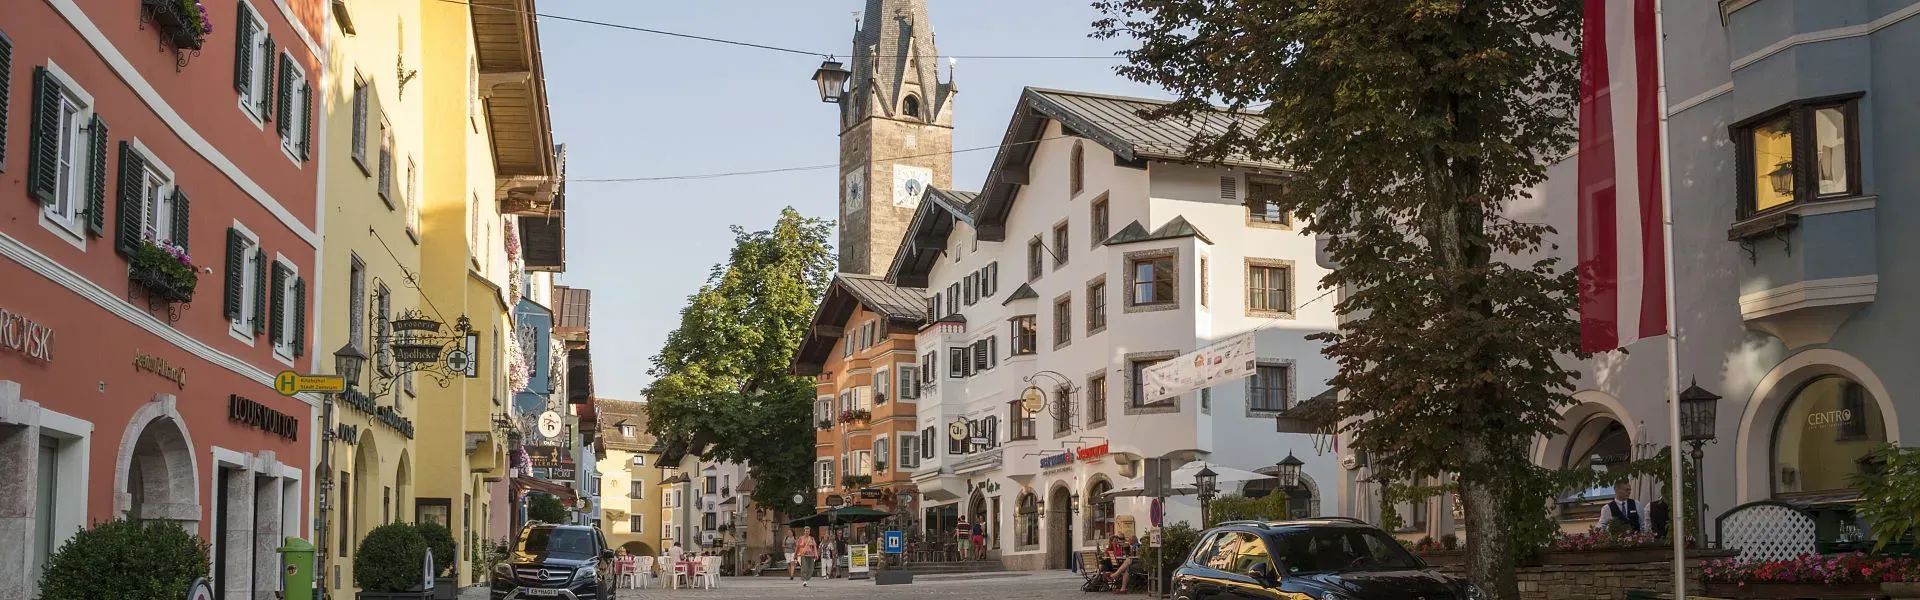 Kitzbühel-Vorderstadt-e-Tirol-Werbung-Jens-Schwarz